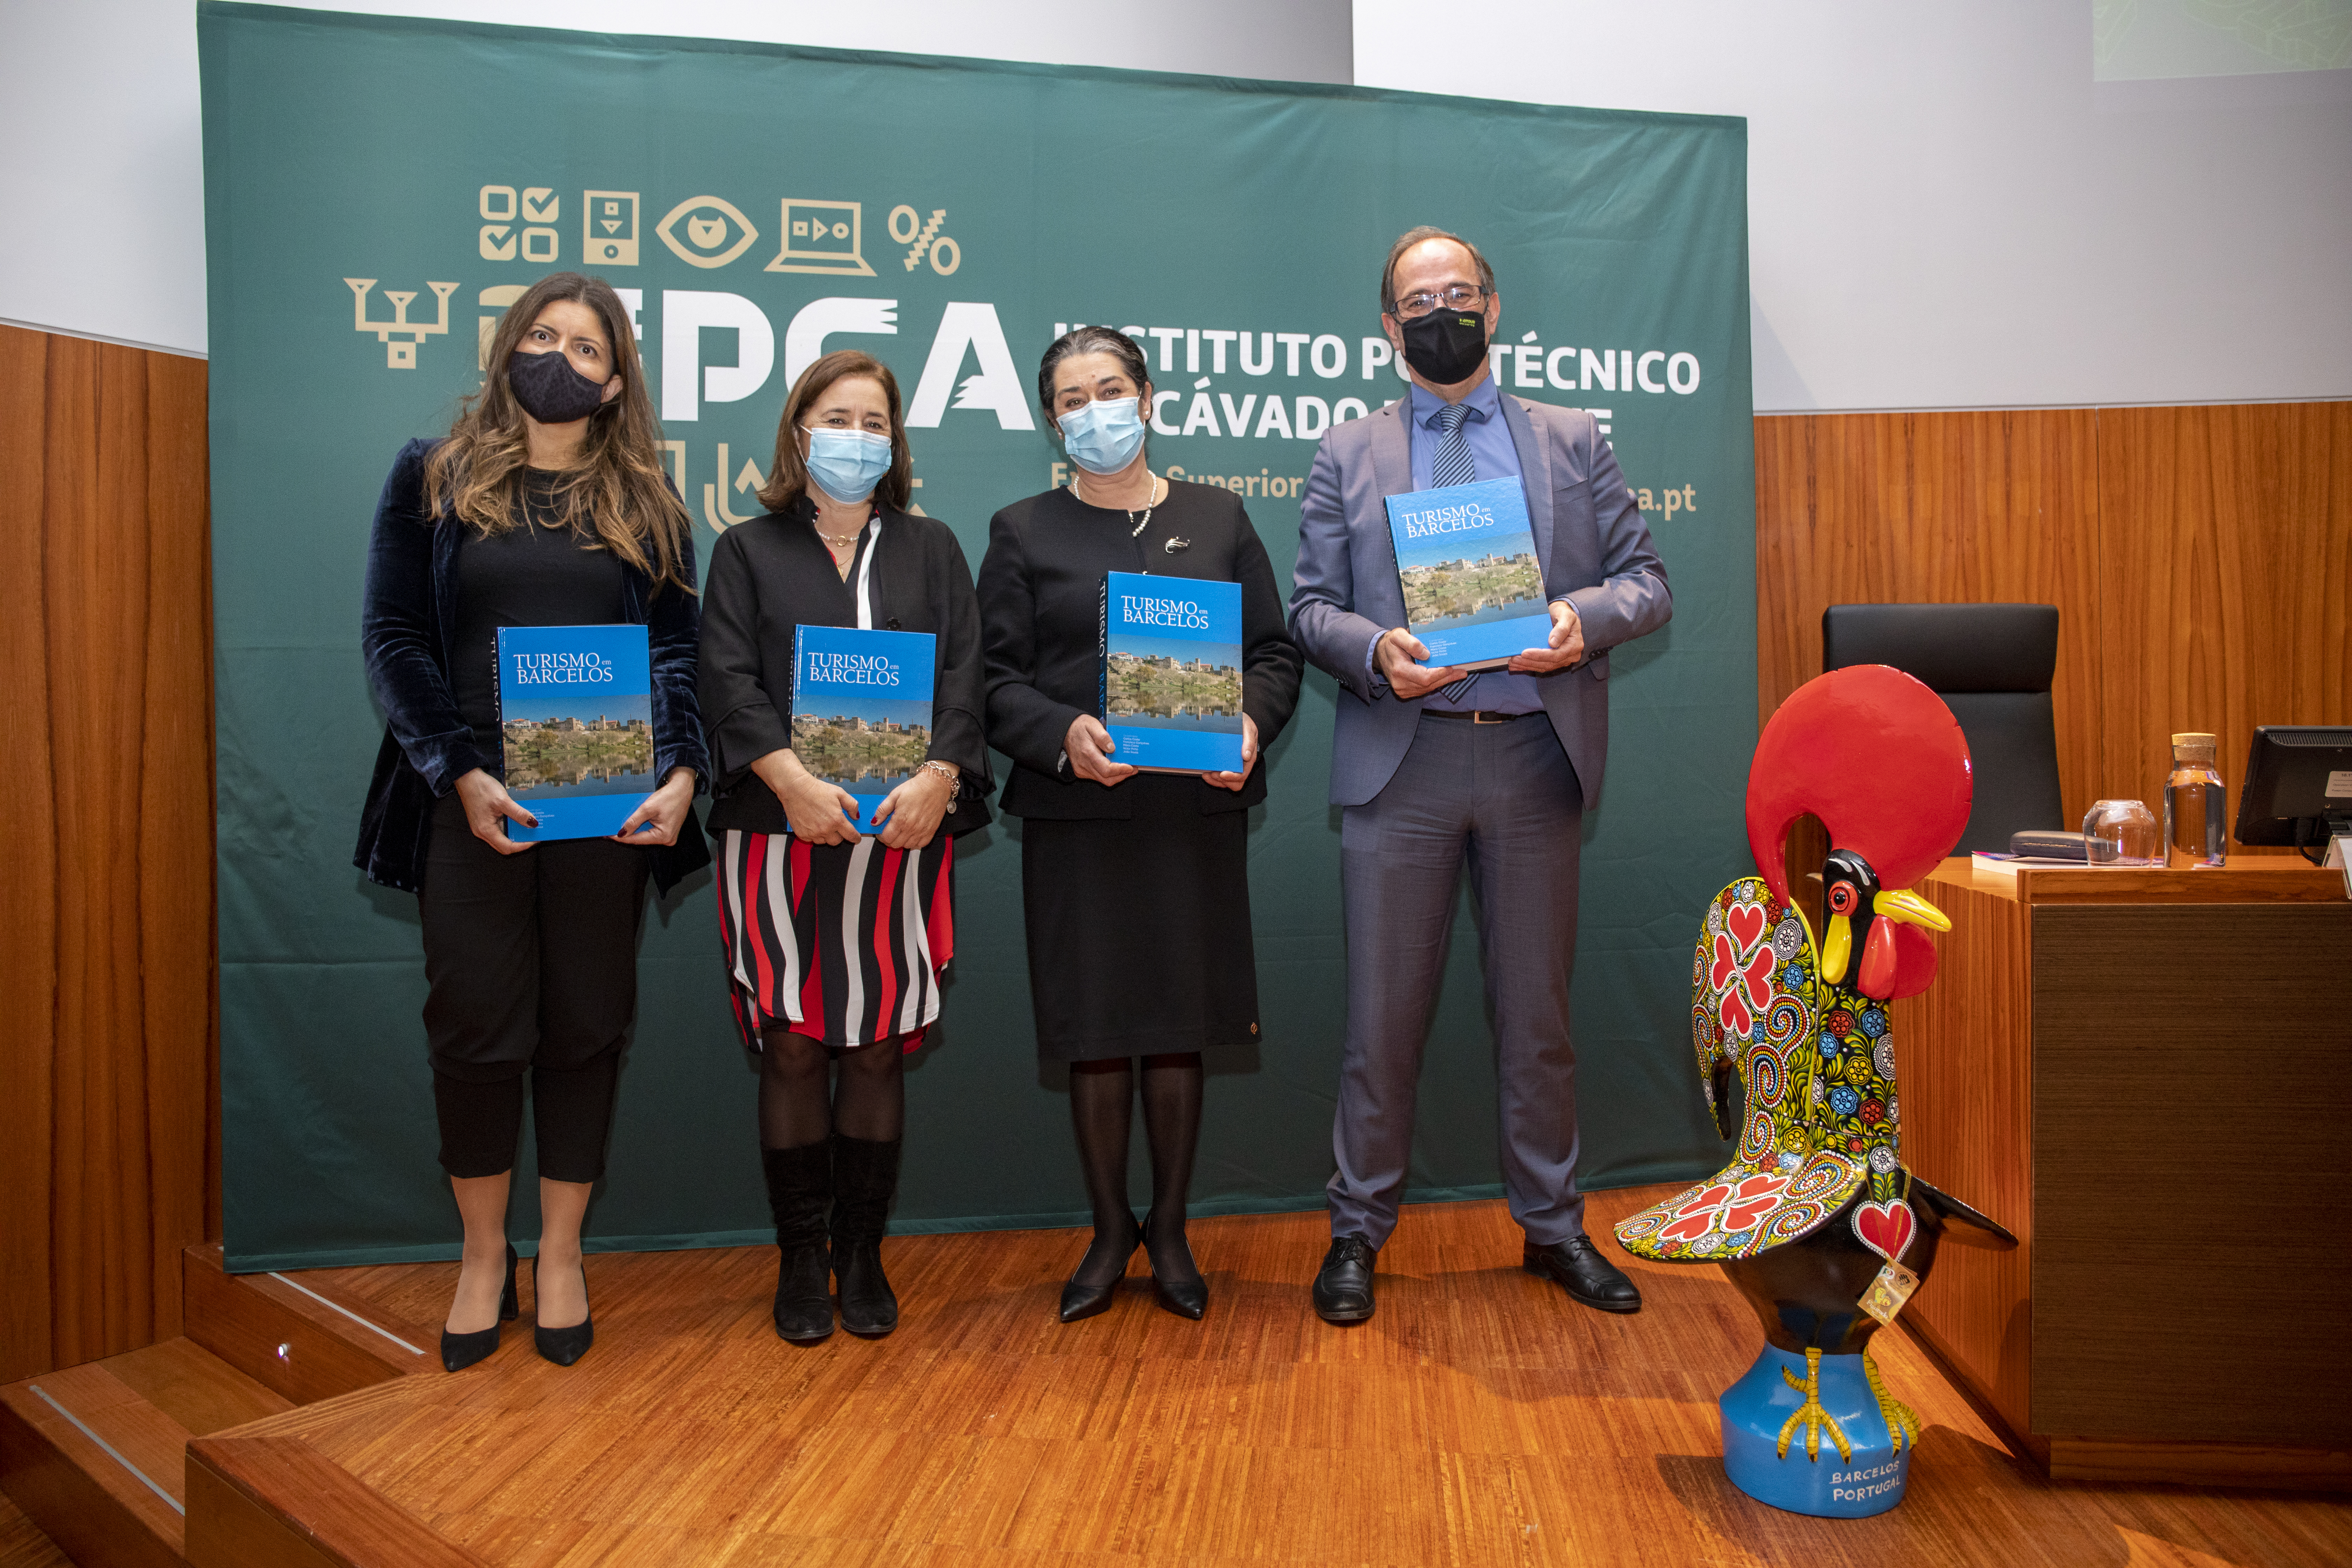 Município de Barcelos e IPCA apresentam livro “Turismo em Barcelos”